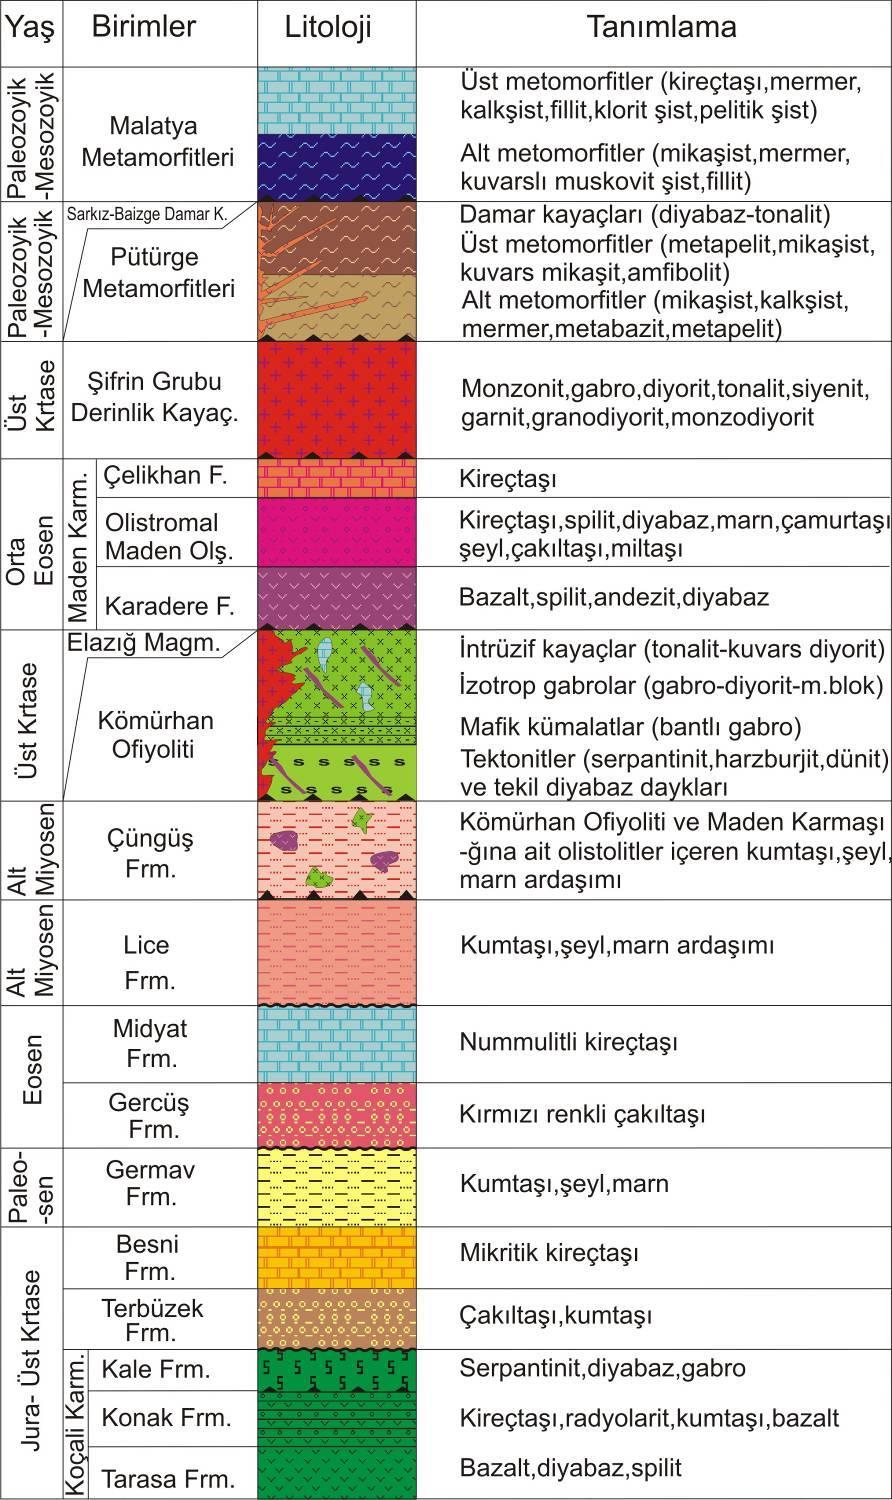 Burcu KARATAŞ, Mustafa AKYILDIZ niteliğinde tektono-magmatik/stratigrafik birim olarak değerlendirilmektedir [1-3].